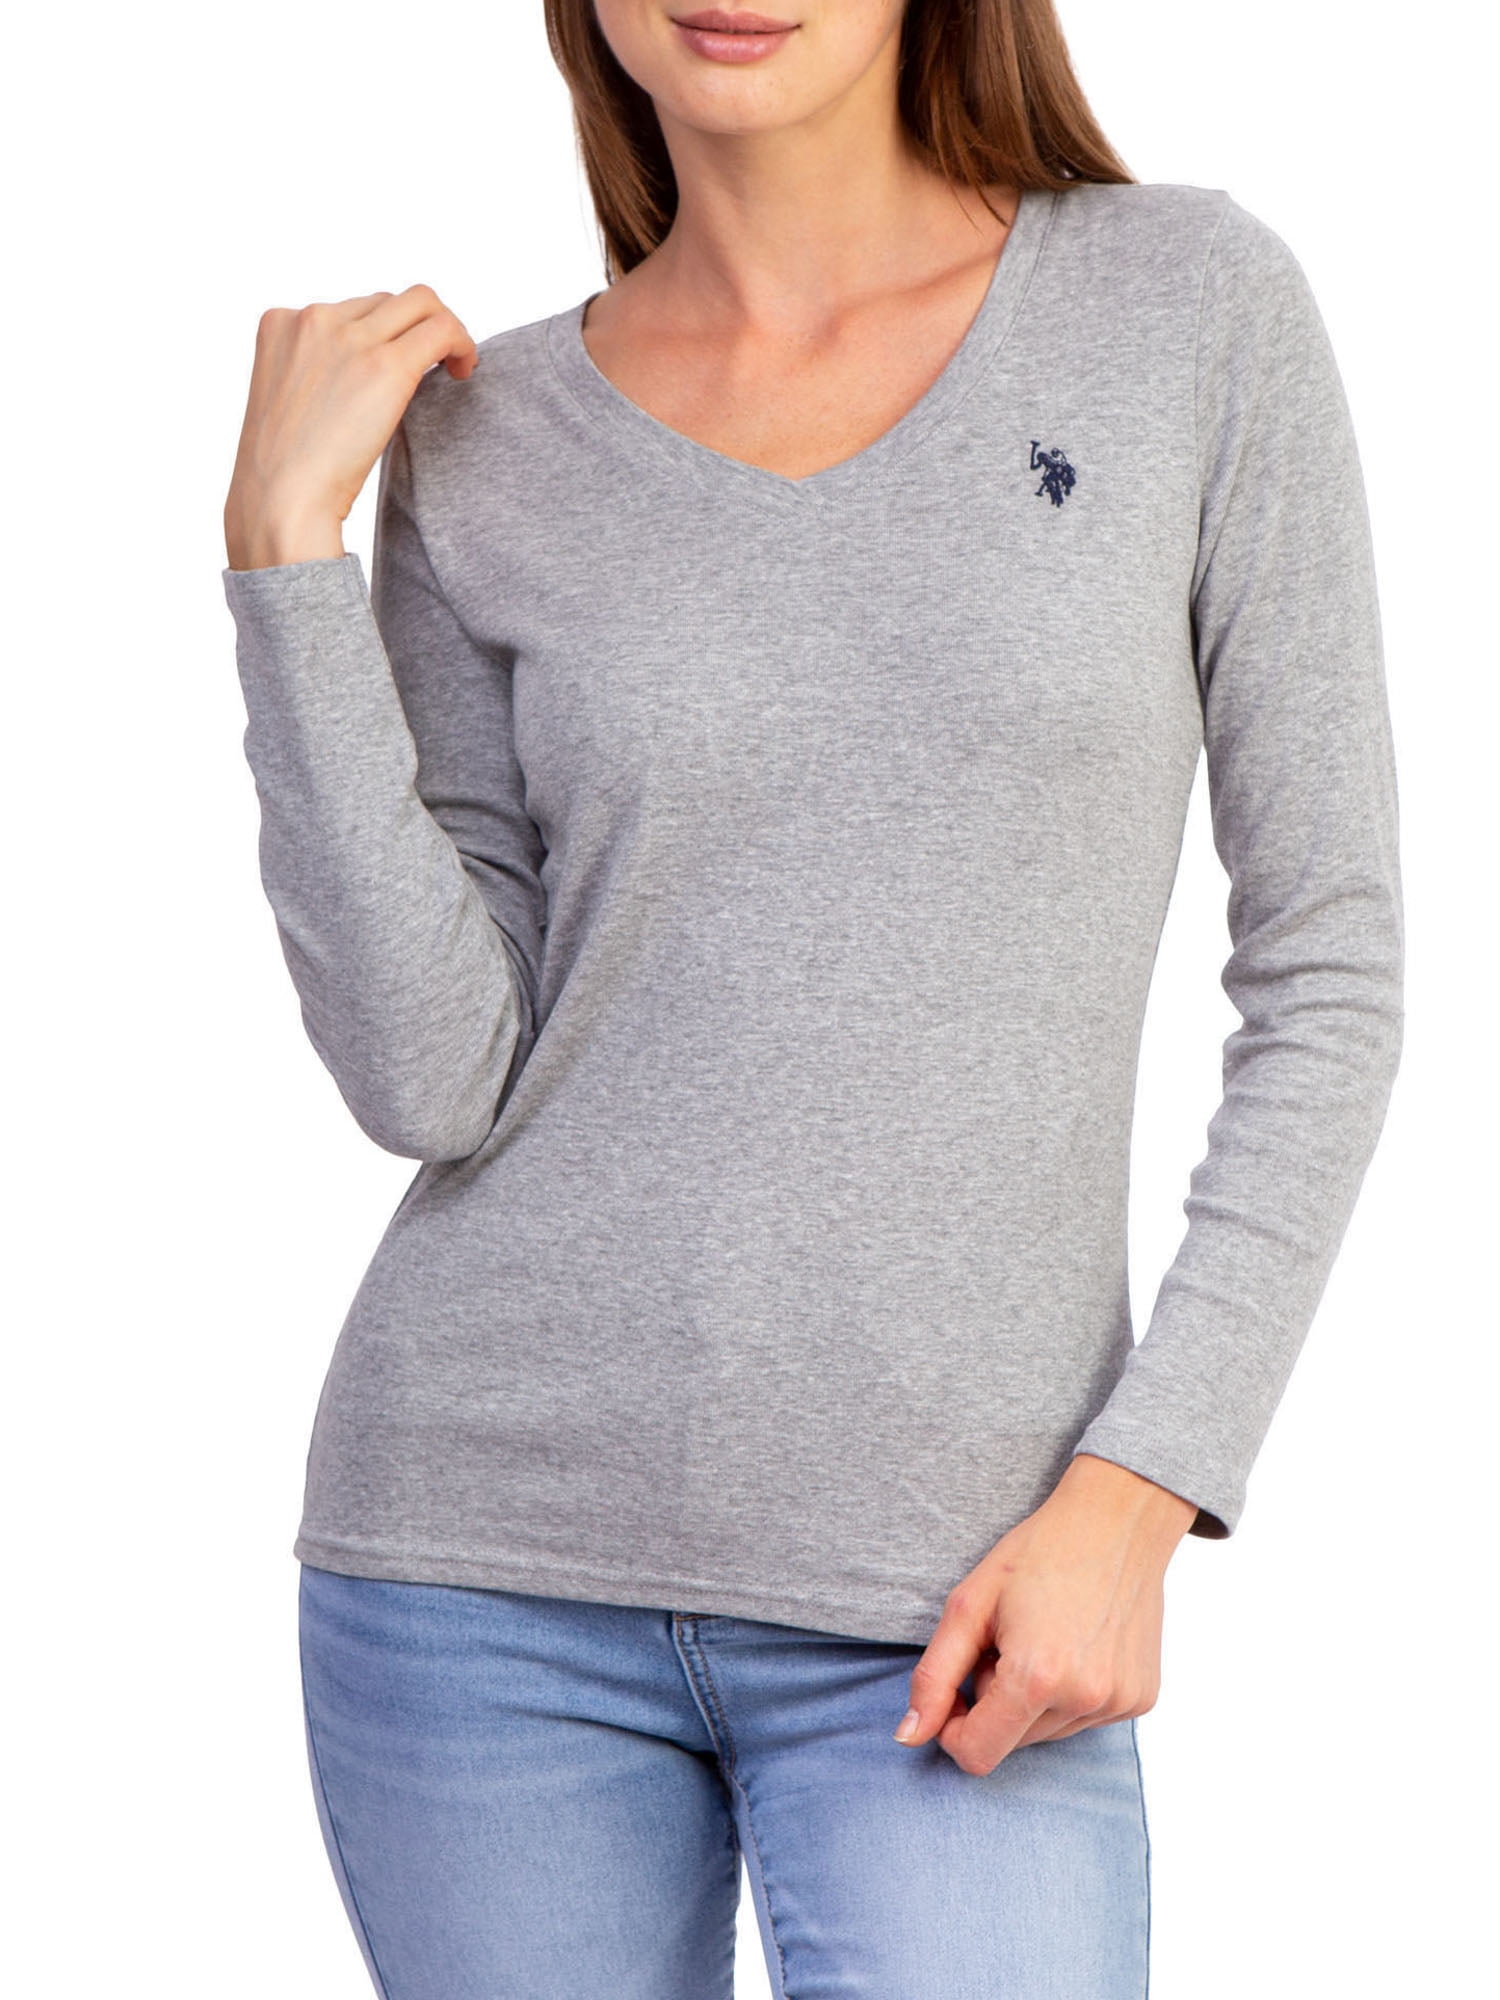 POLO ASSN U.S Womens Short Sleeve Cotton Jersey V-Neck T-Shirt T-Shirt